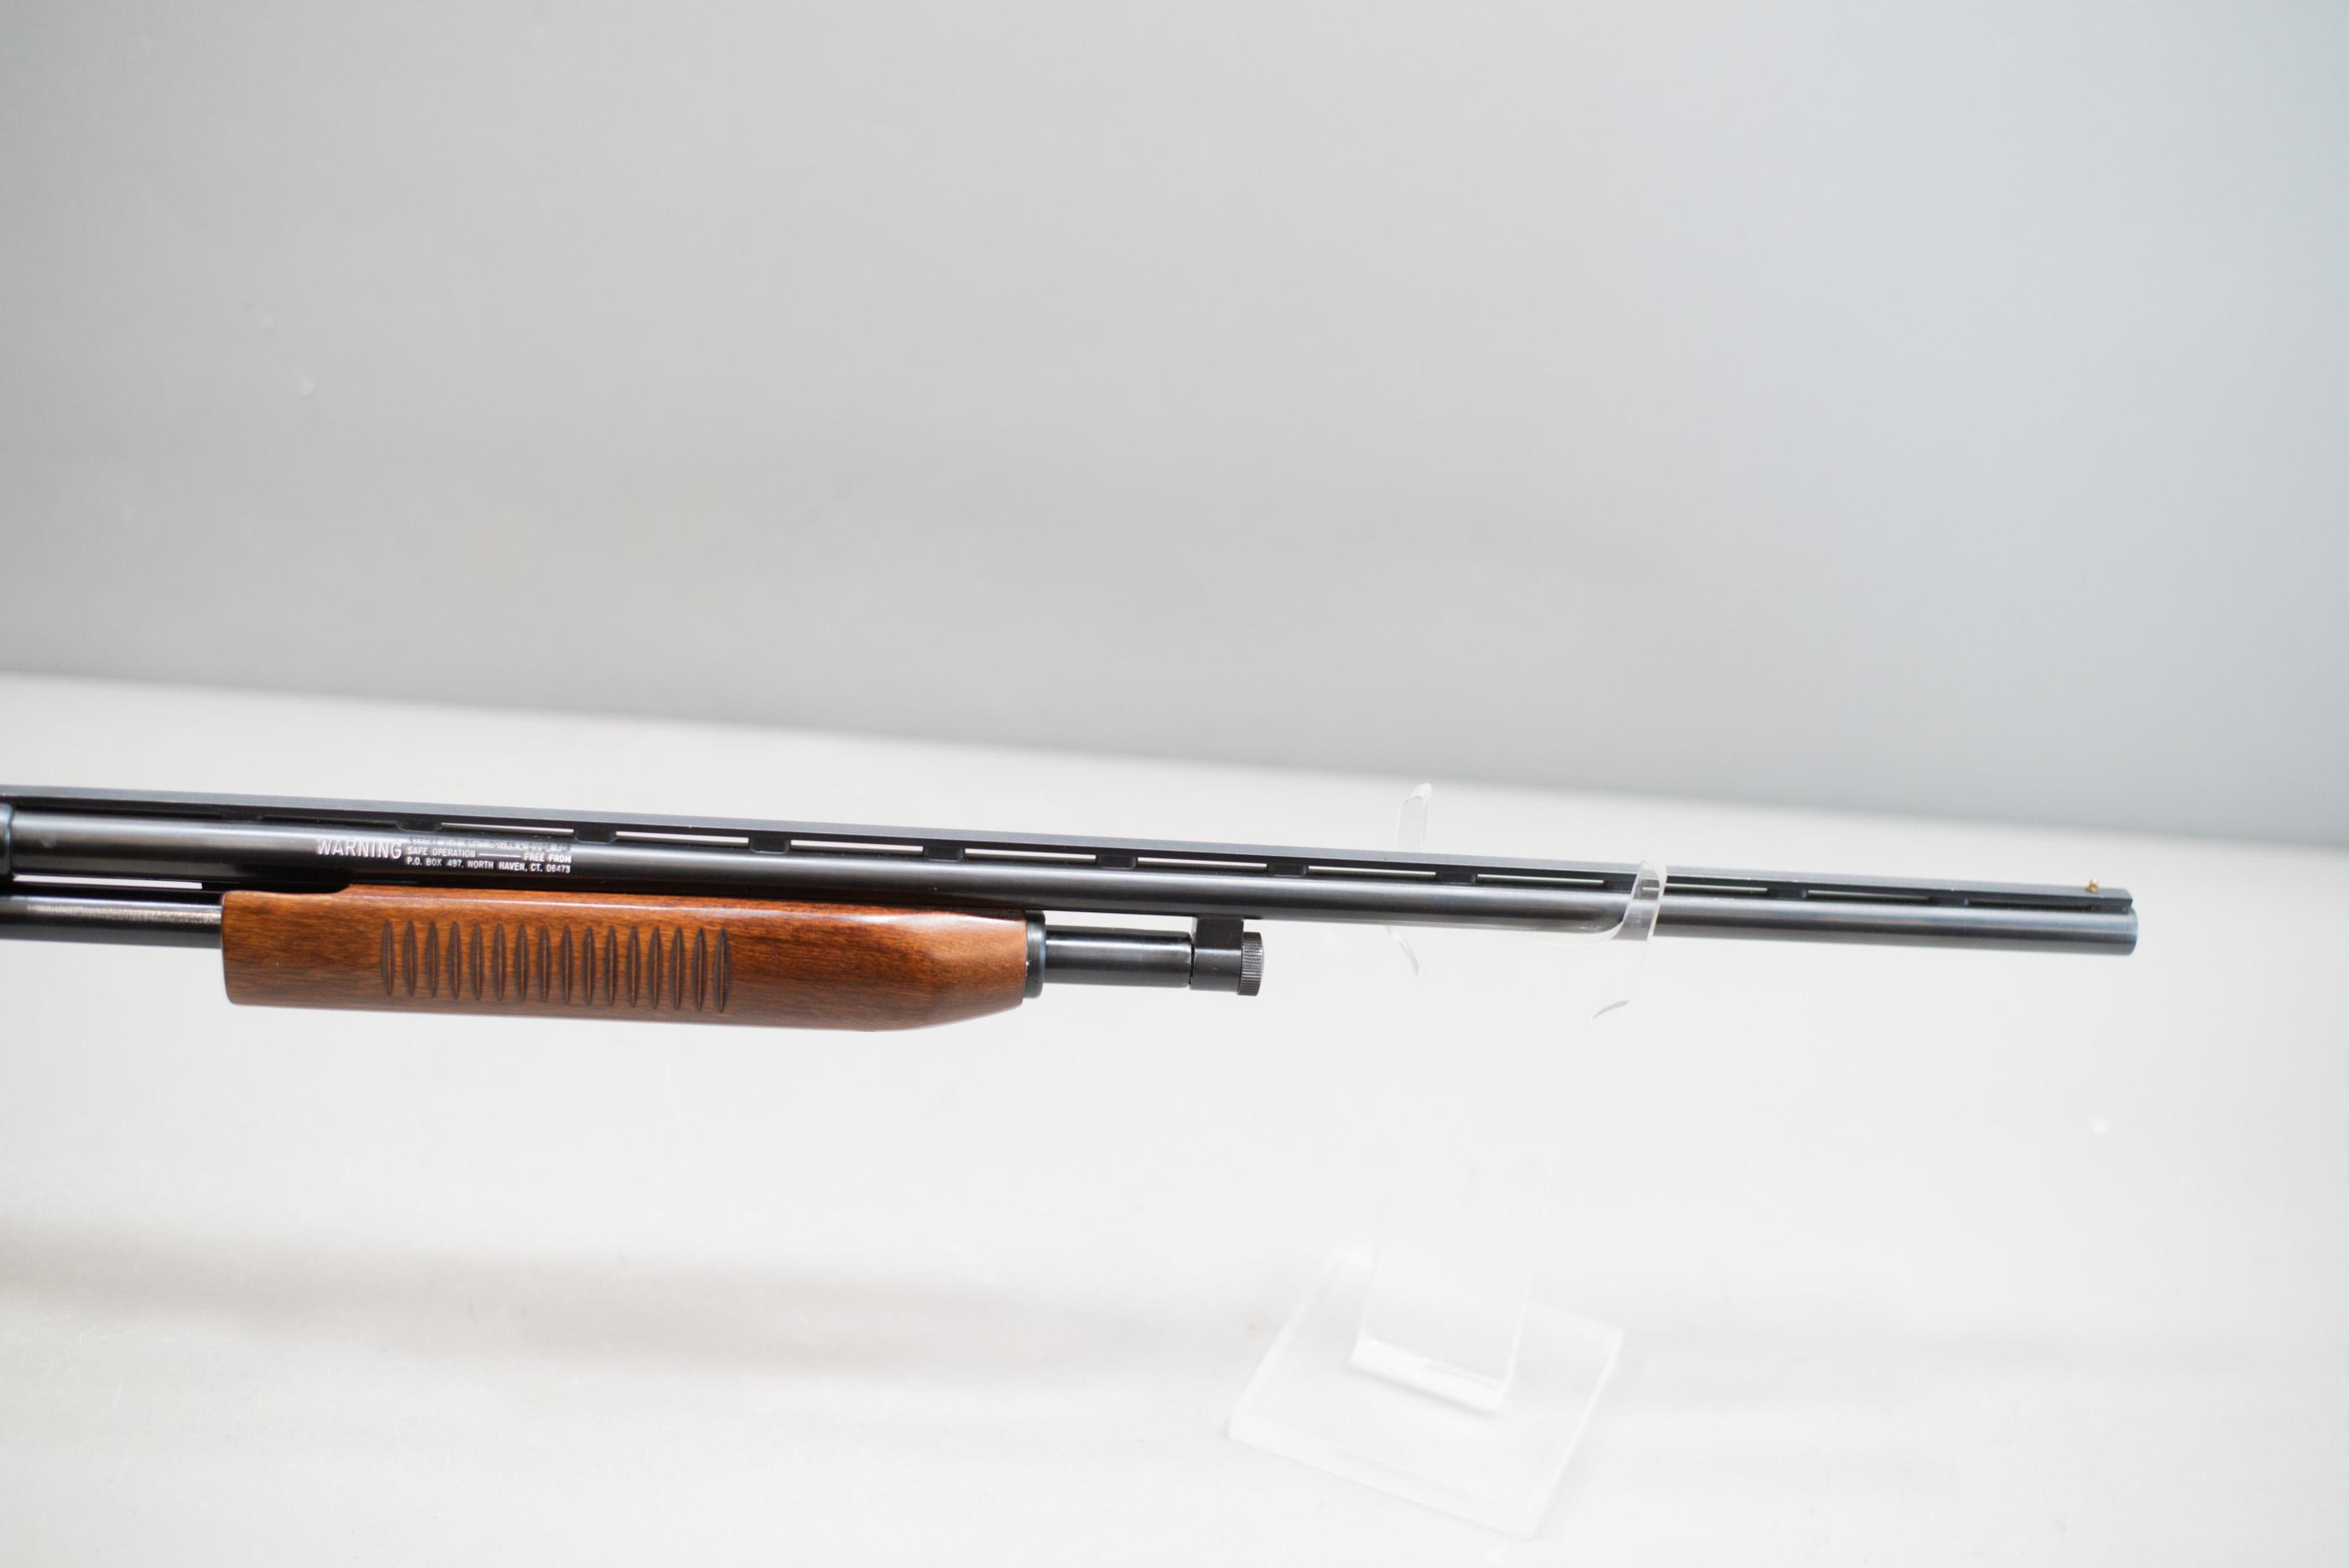 (R) Westernfield Model M550ED .410 Gauge Shotgun